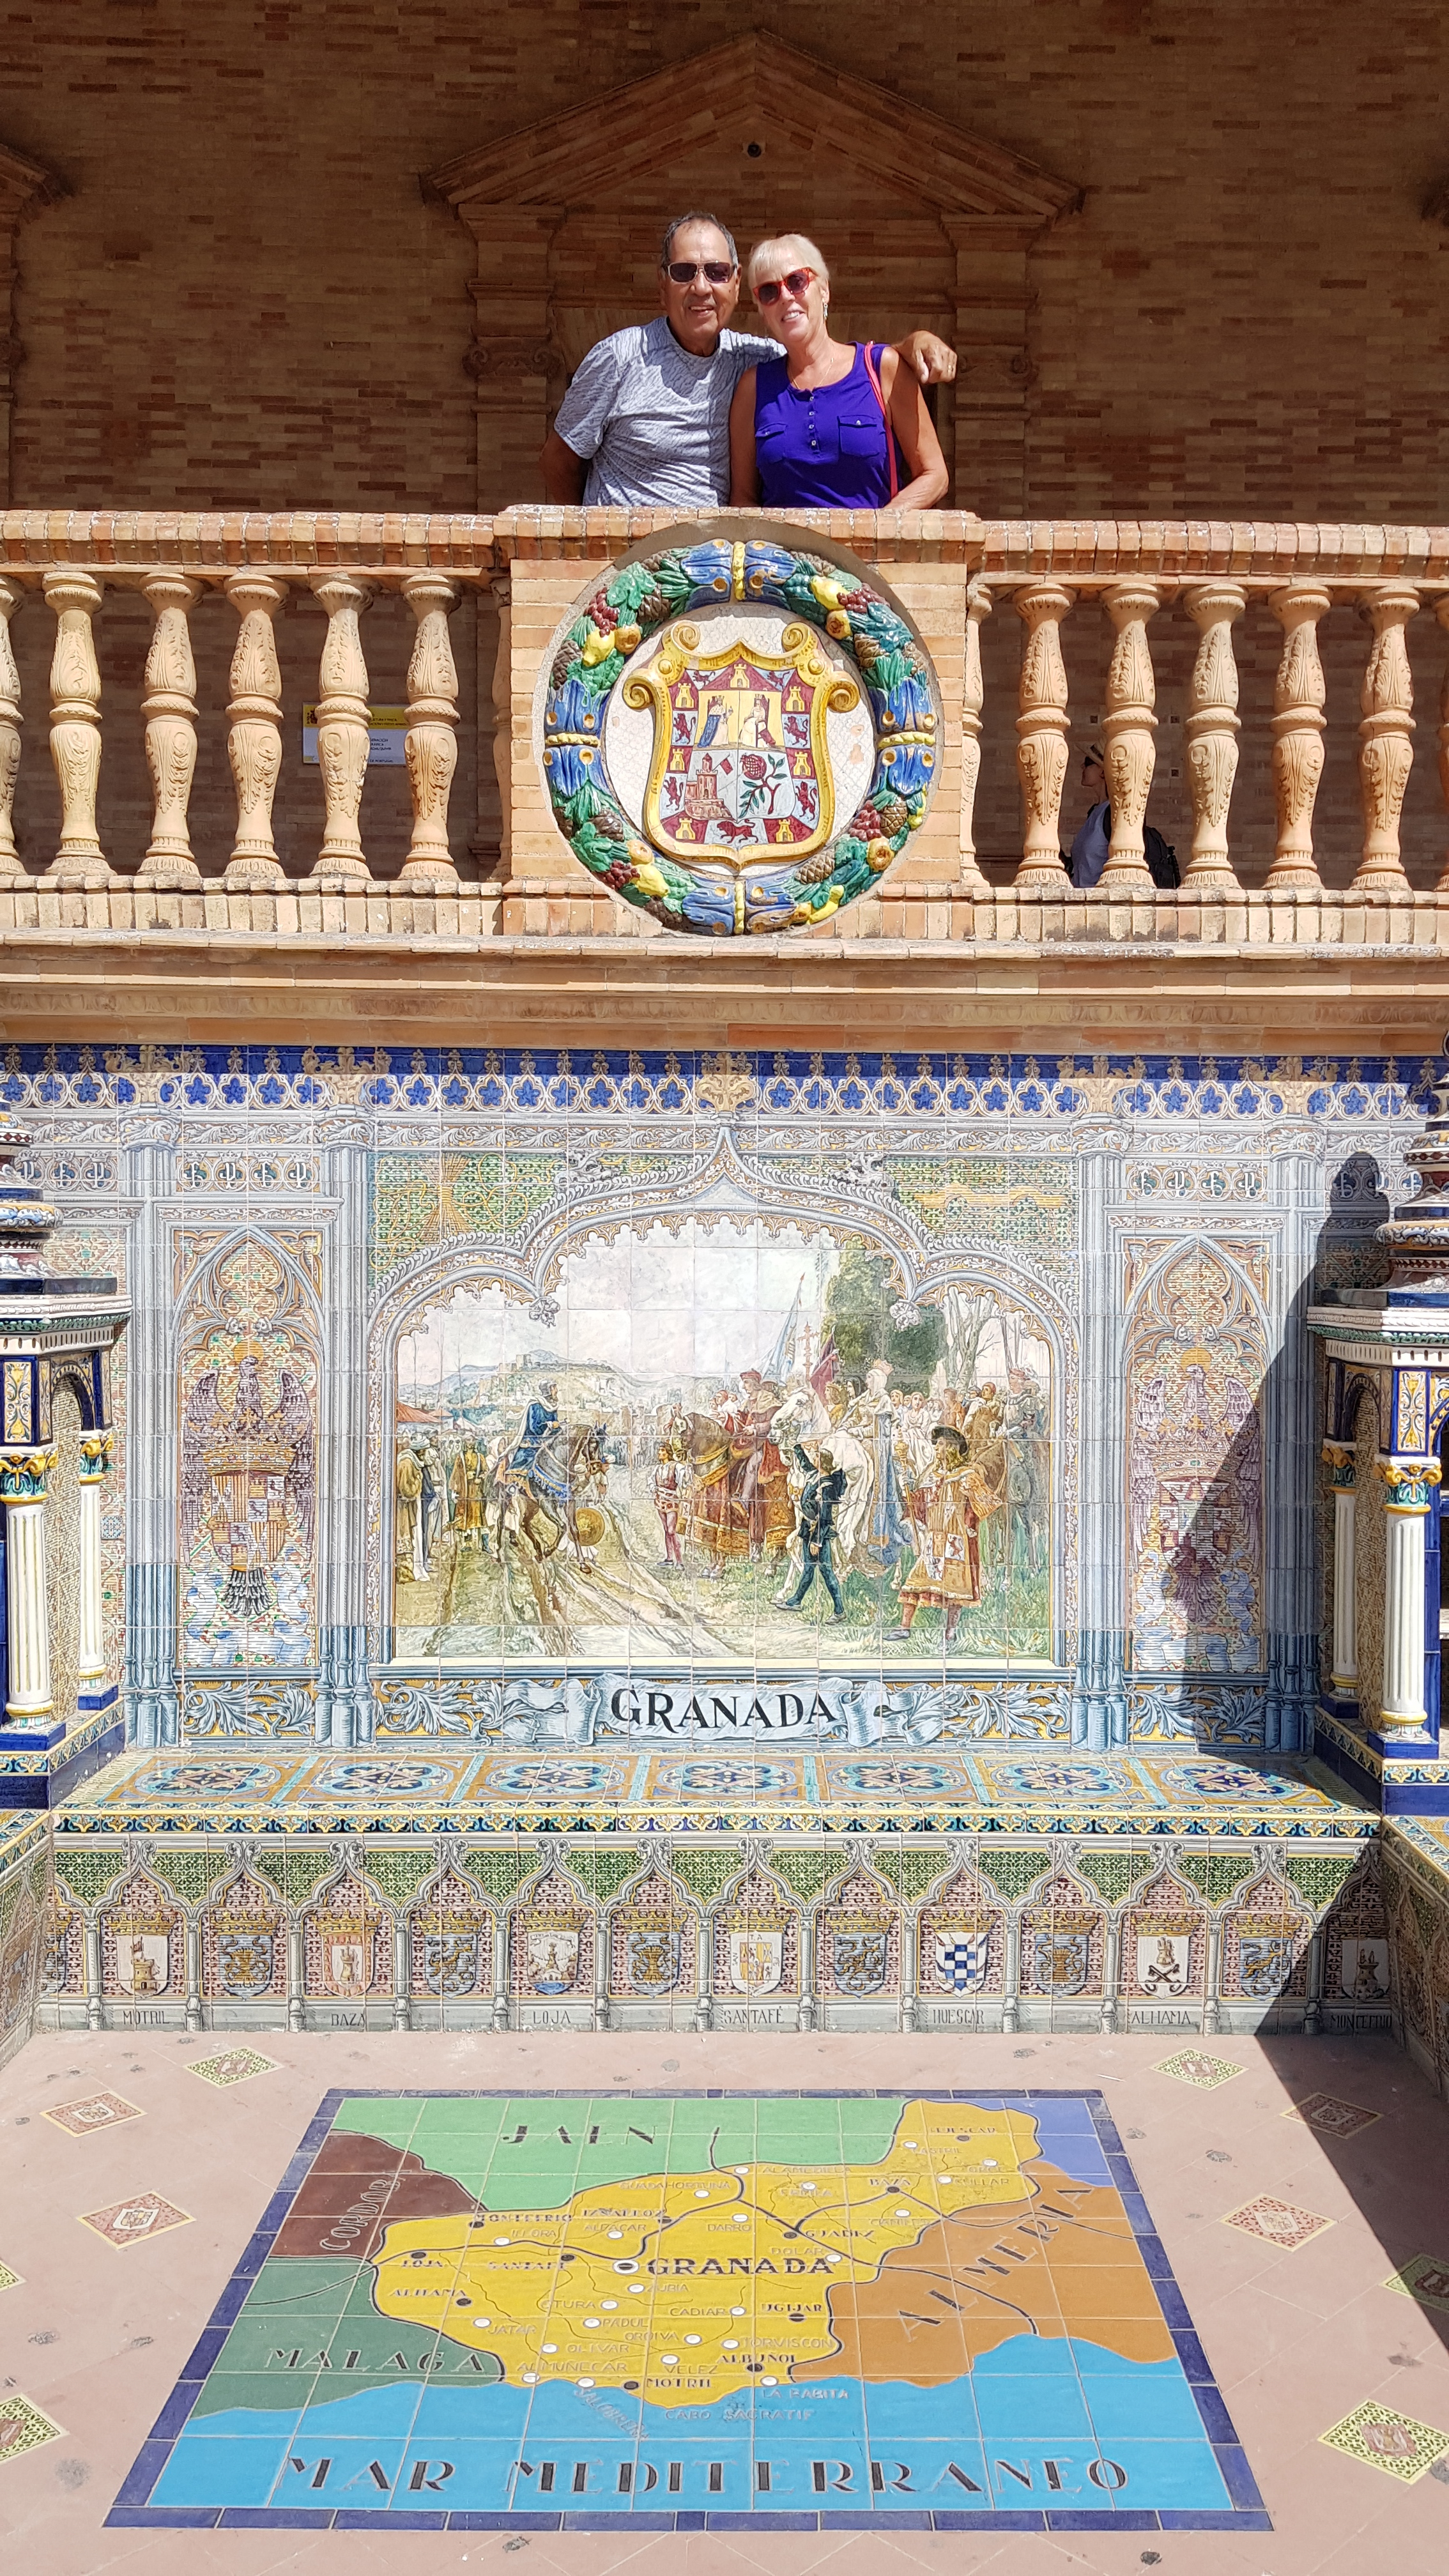 The Granada tiles at the Plaza de España.